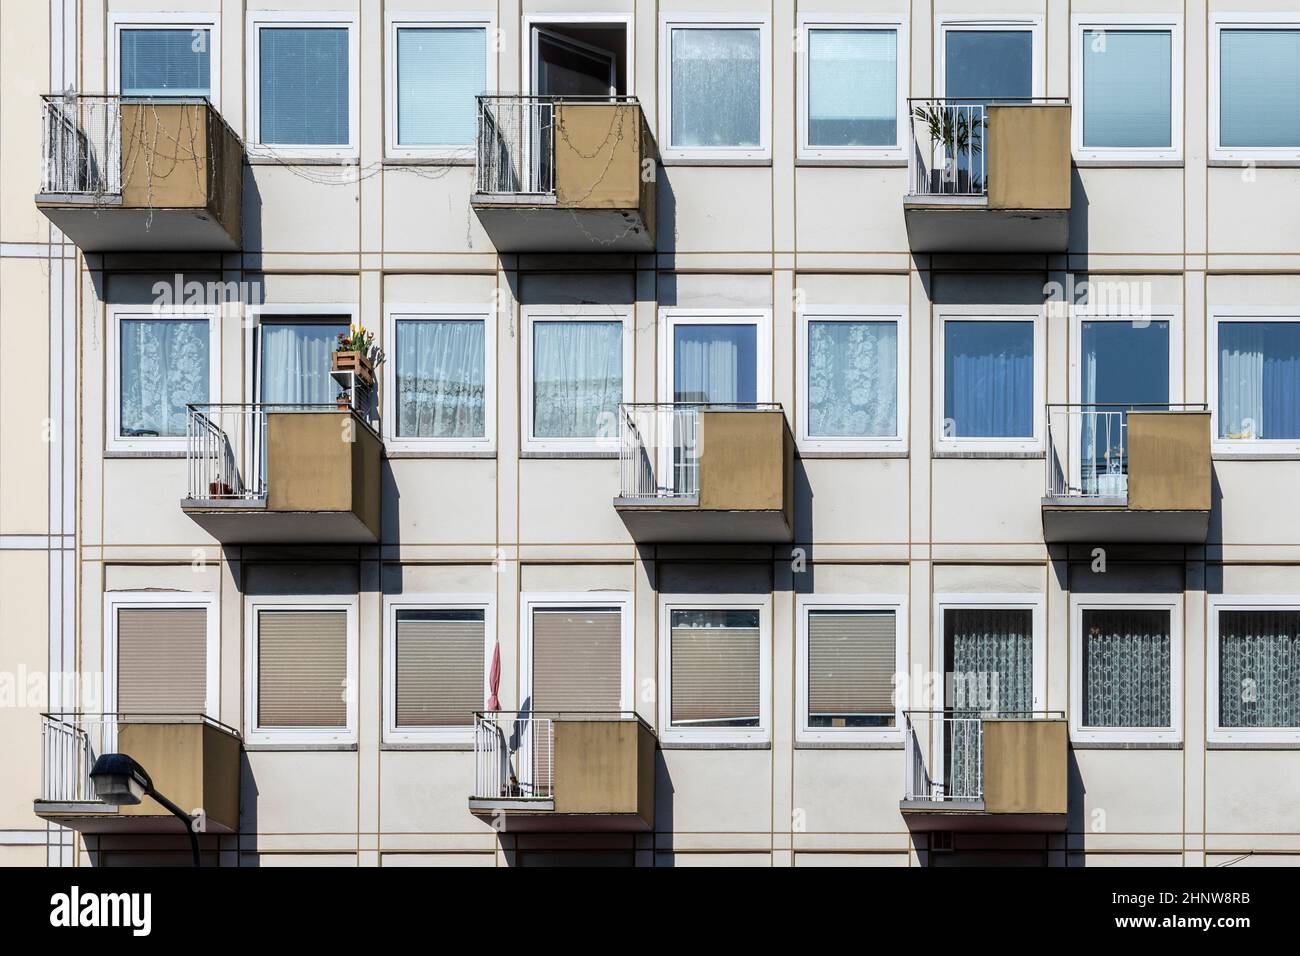 Fachada de la casa en la típica arquitectura de vivienda social en Alemania Foto de stock